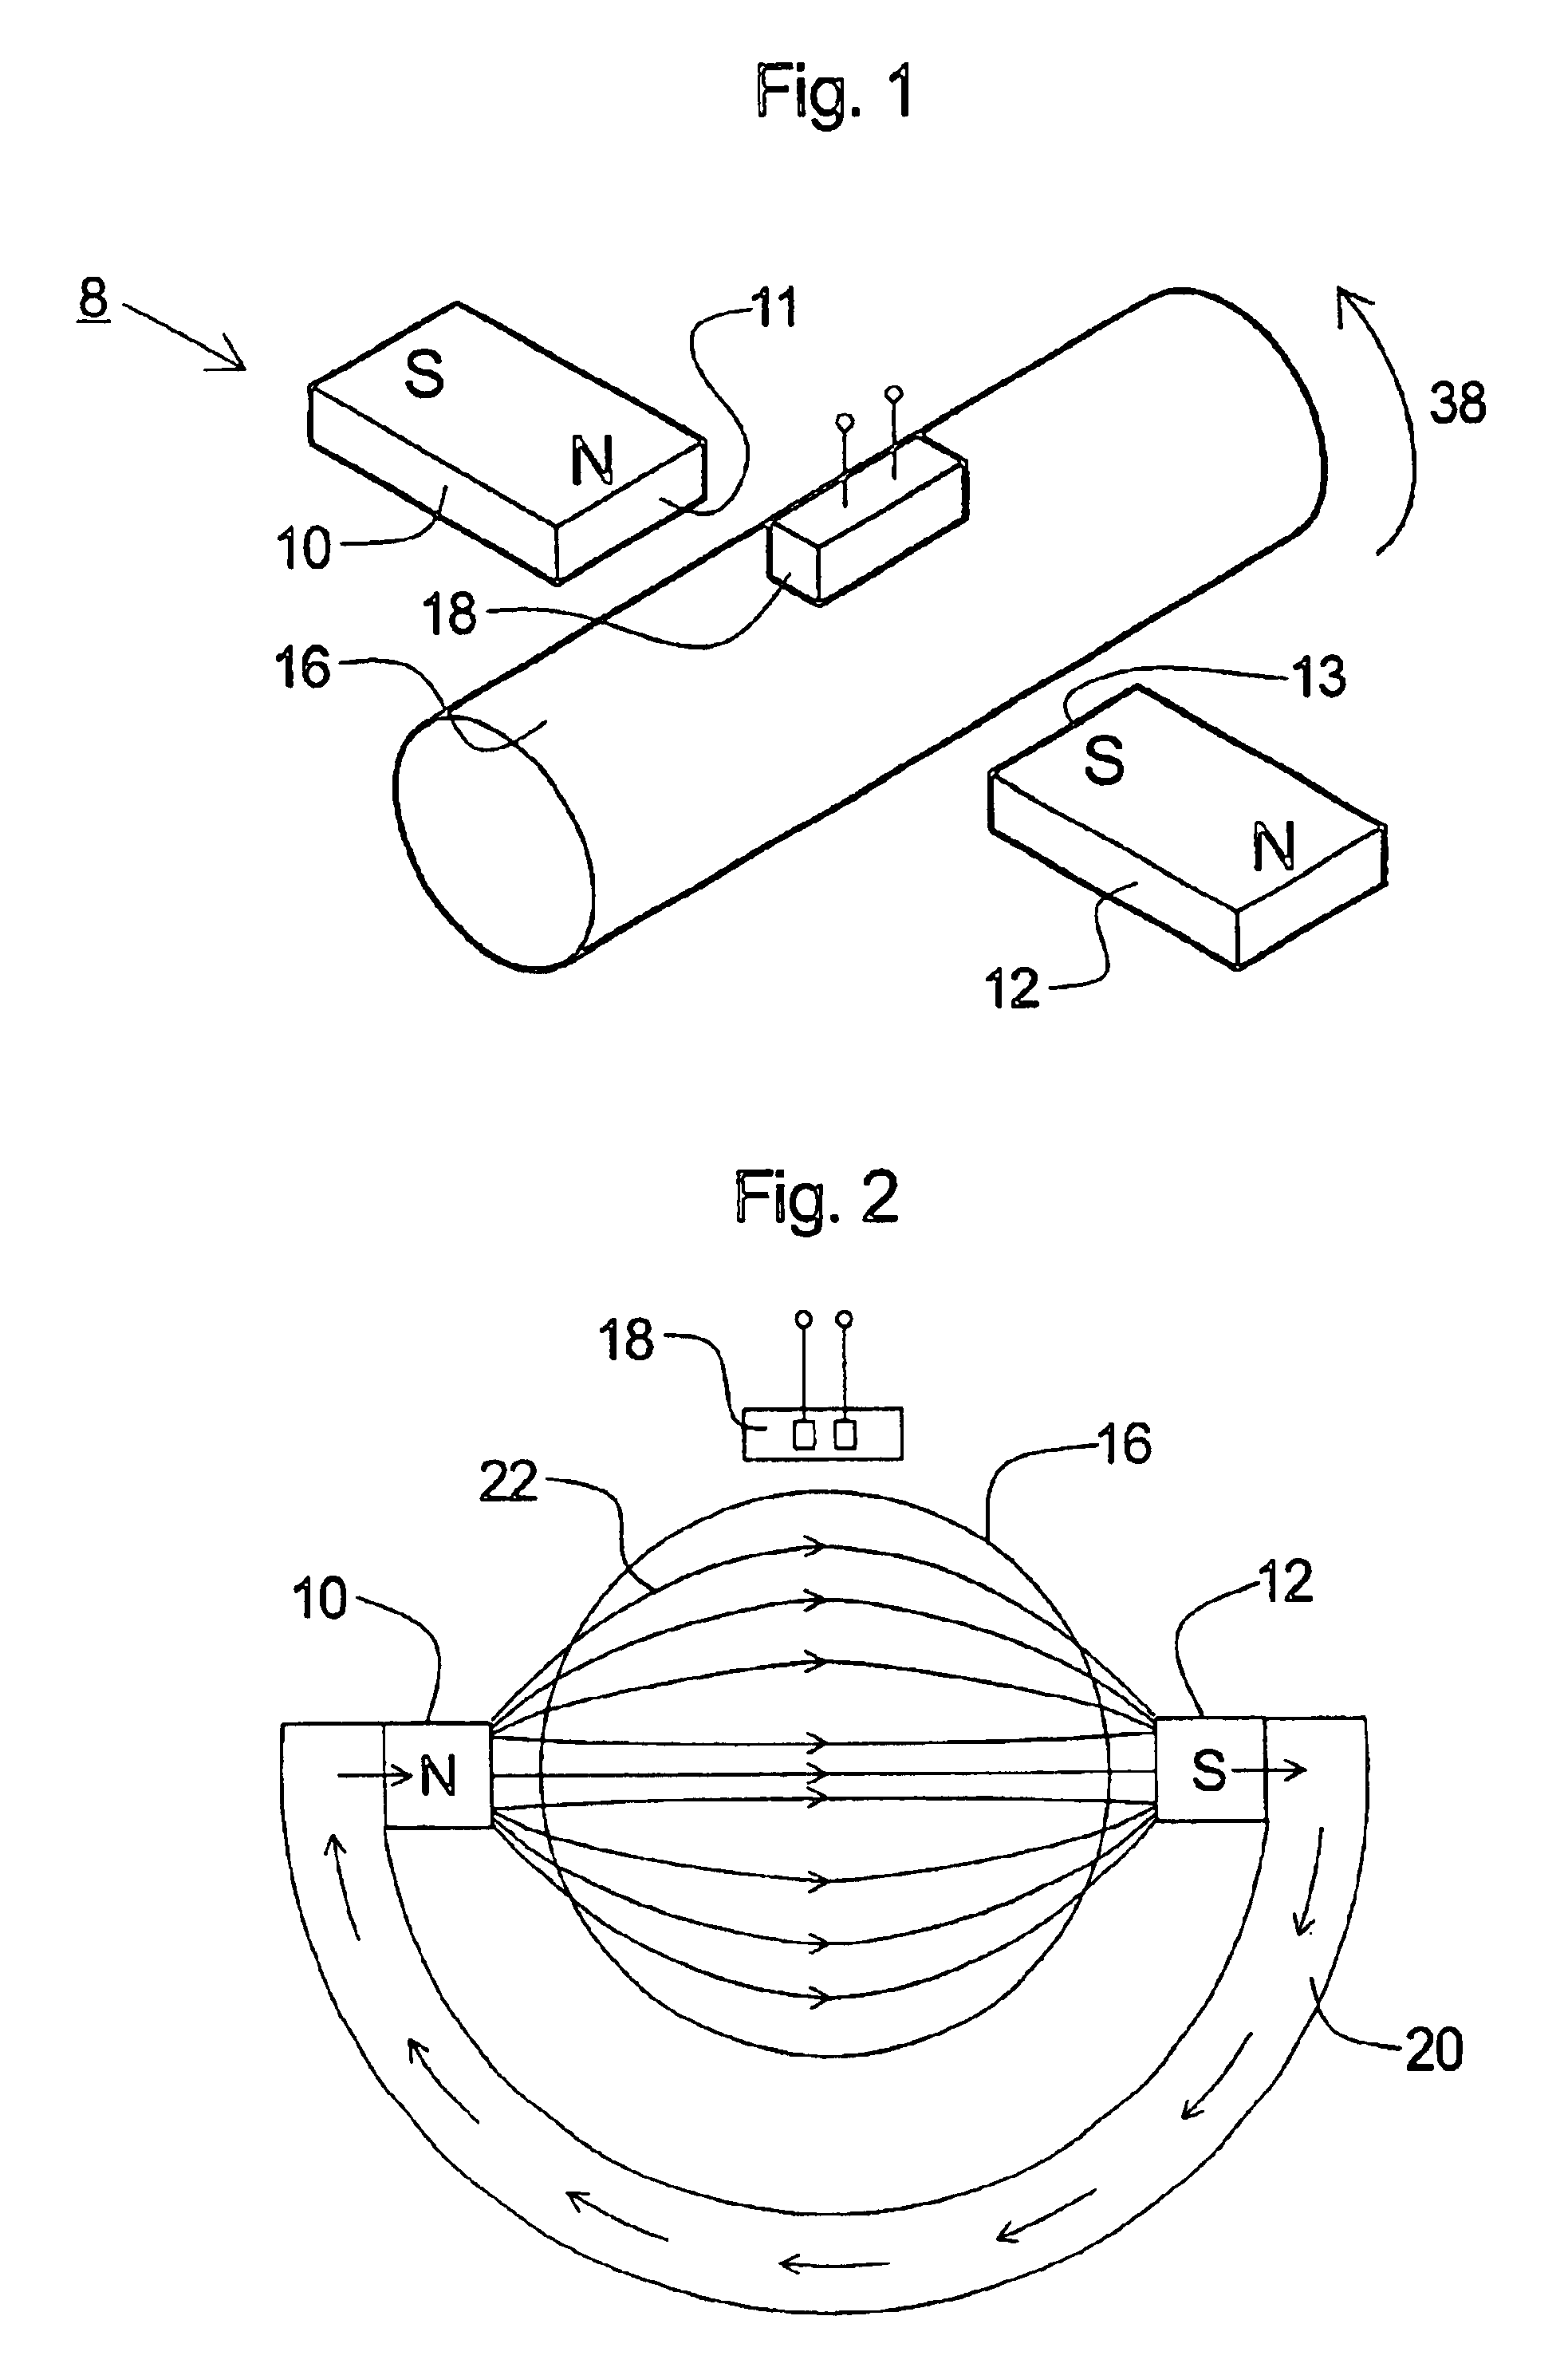 Torque sensing apparatus and method